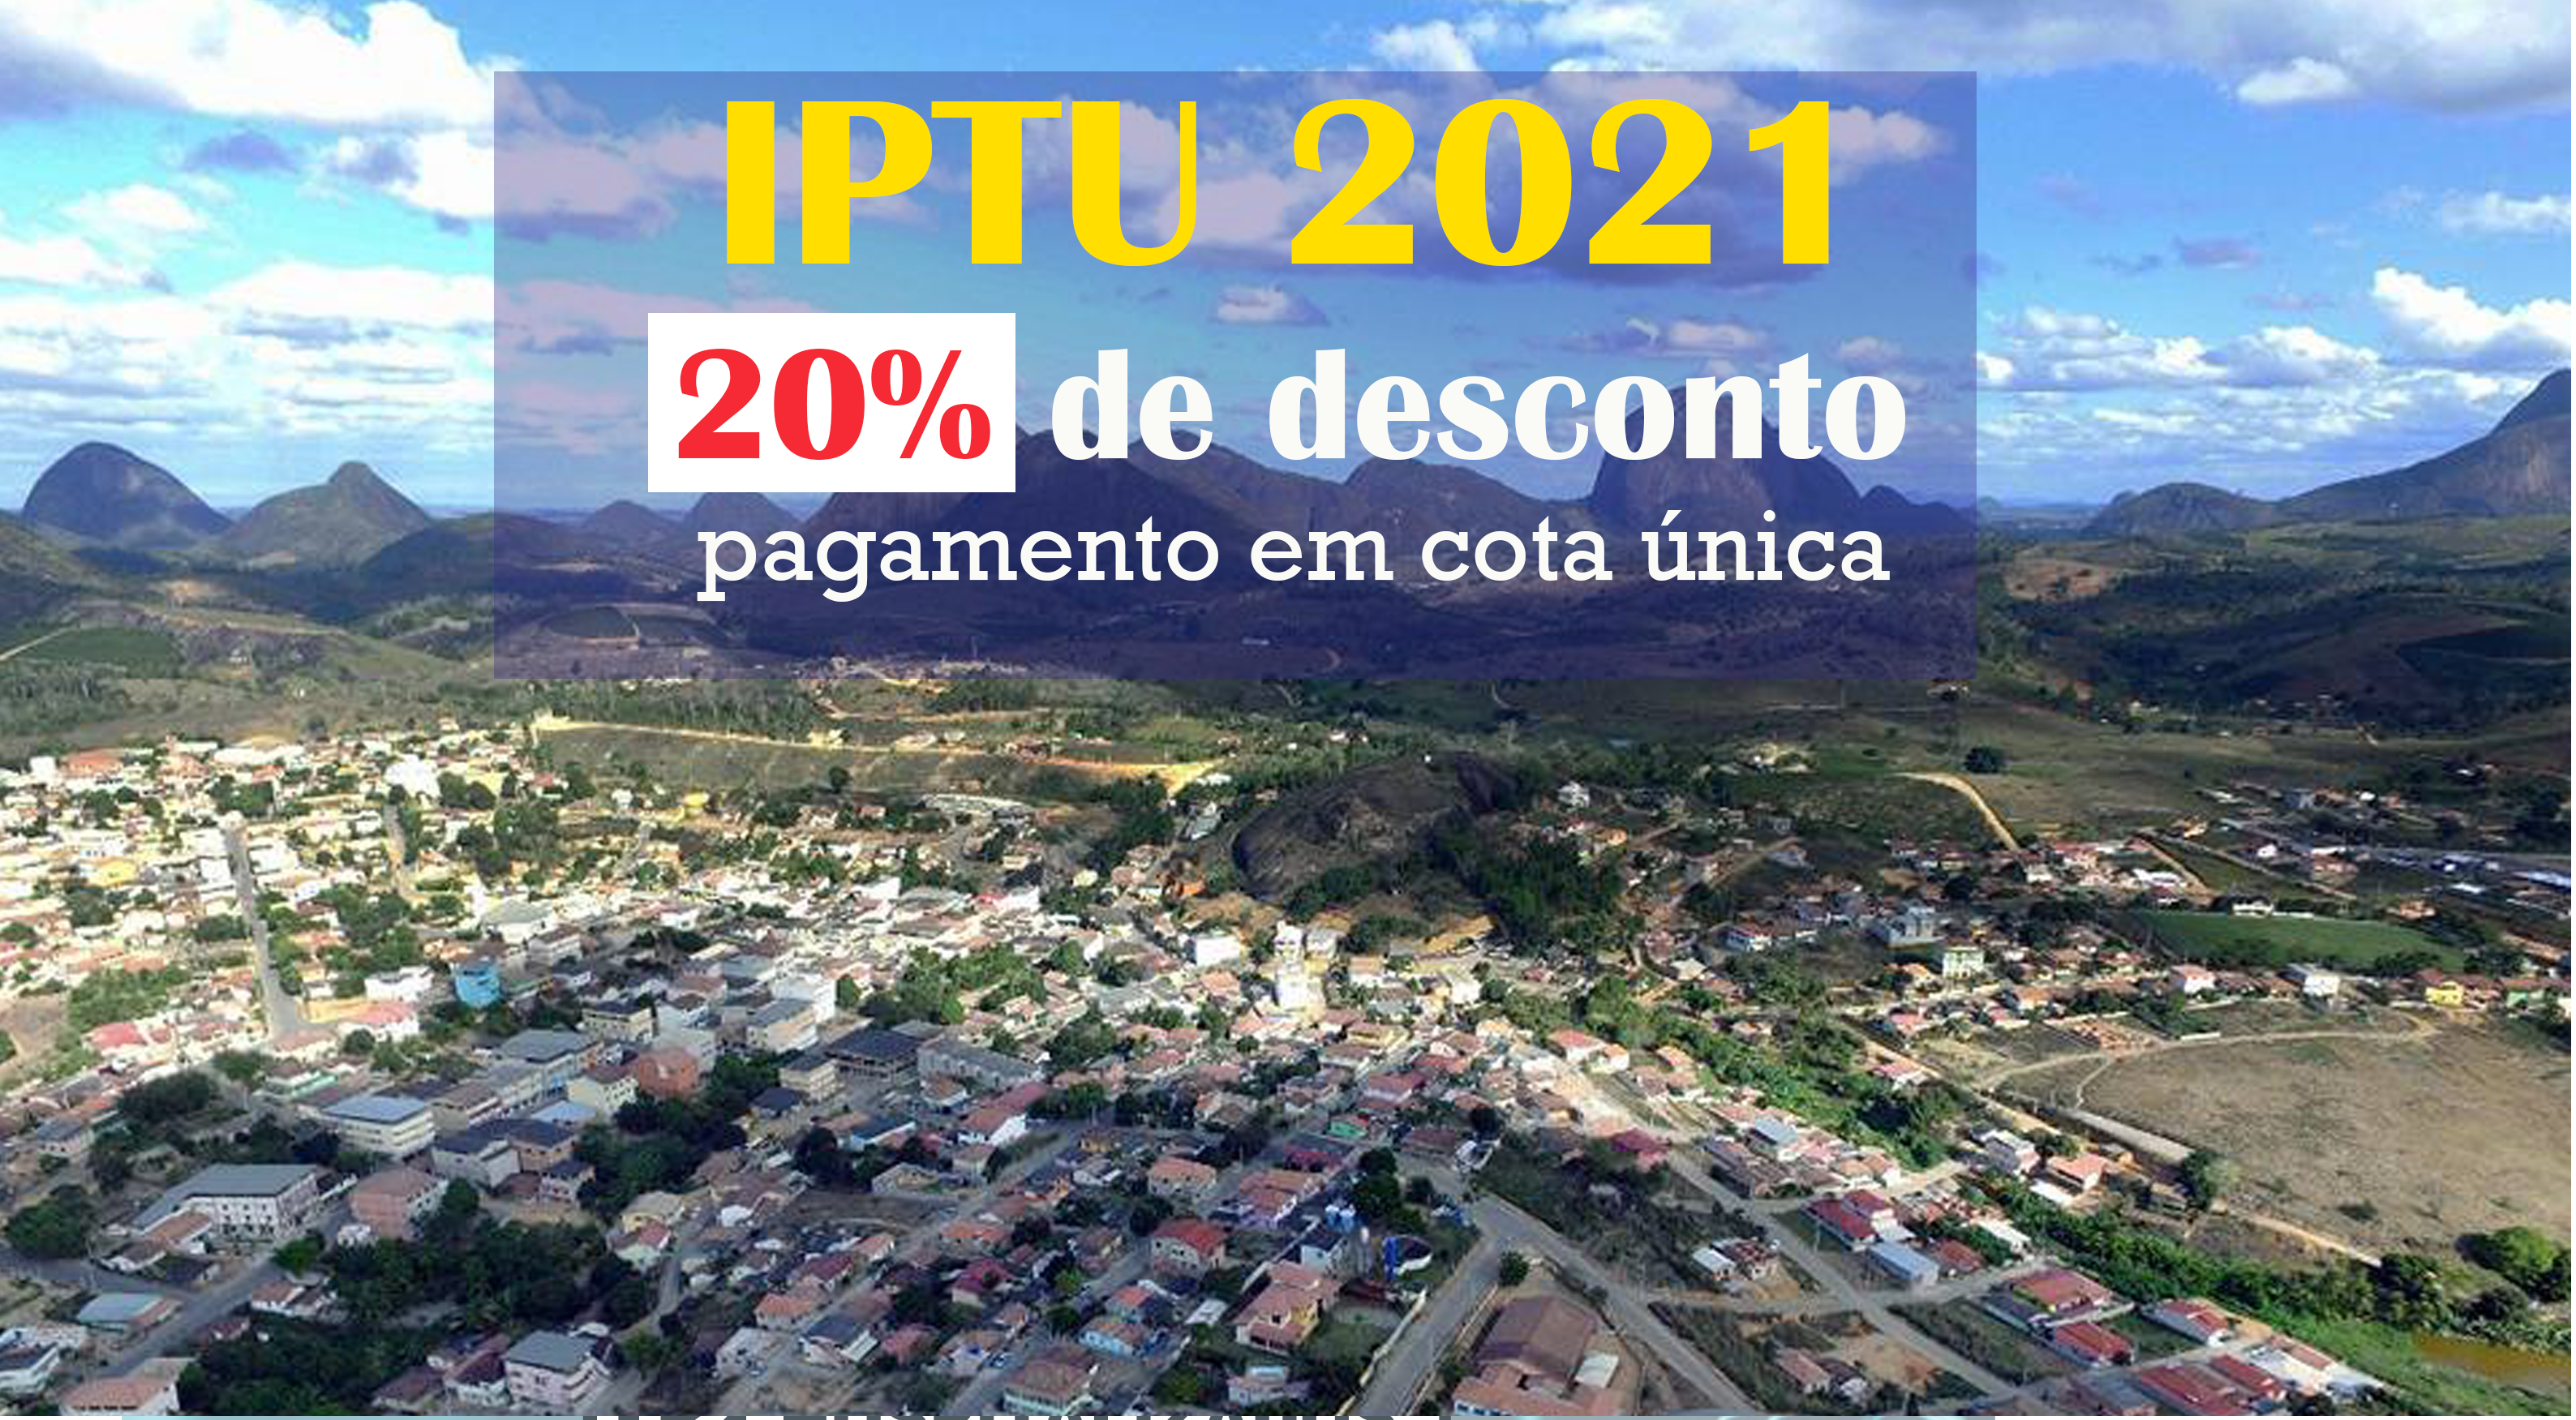 Prefeitura lança IPTU 2021. Pagamento em cota única tem desconto de 20%